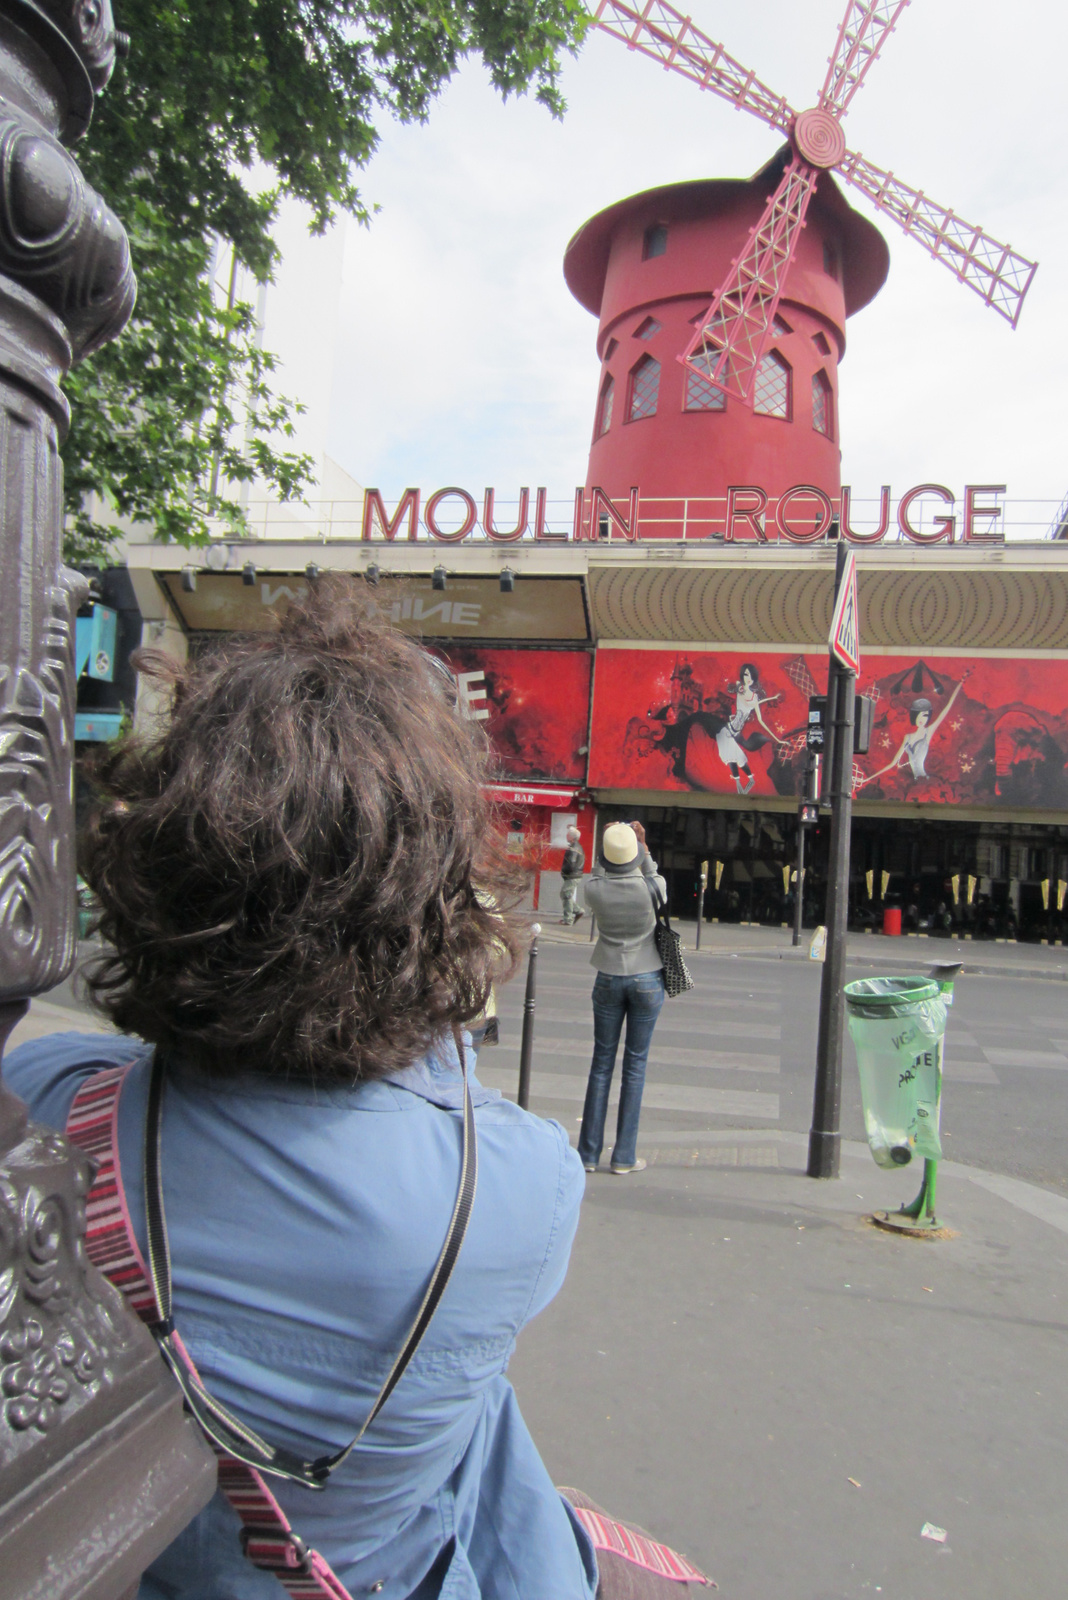 Moulin rouge-t fotozunk